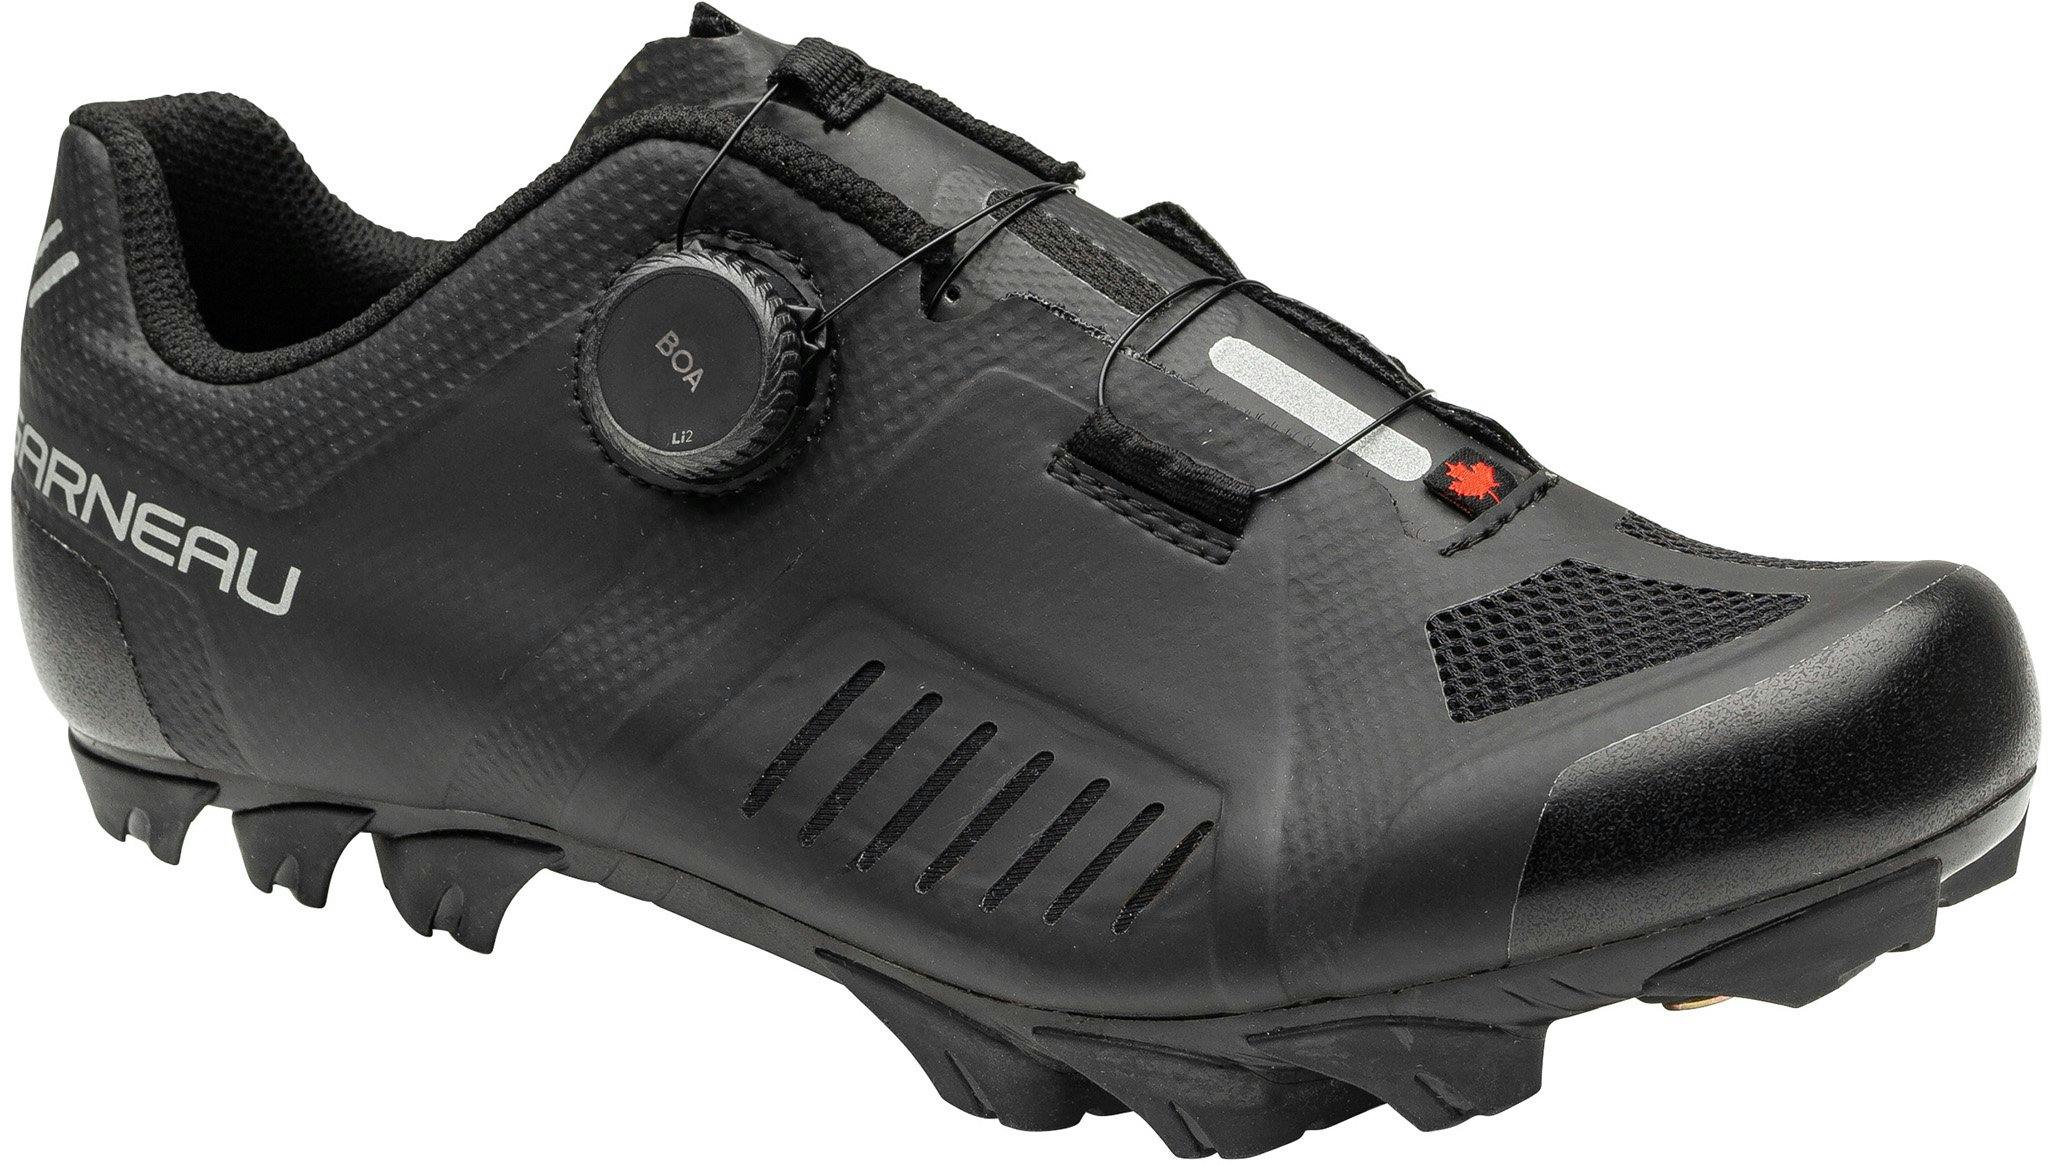 Image de produit pour Chaussures de cycliste Granite XC - Homme